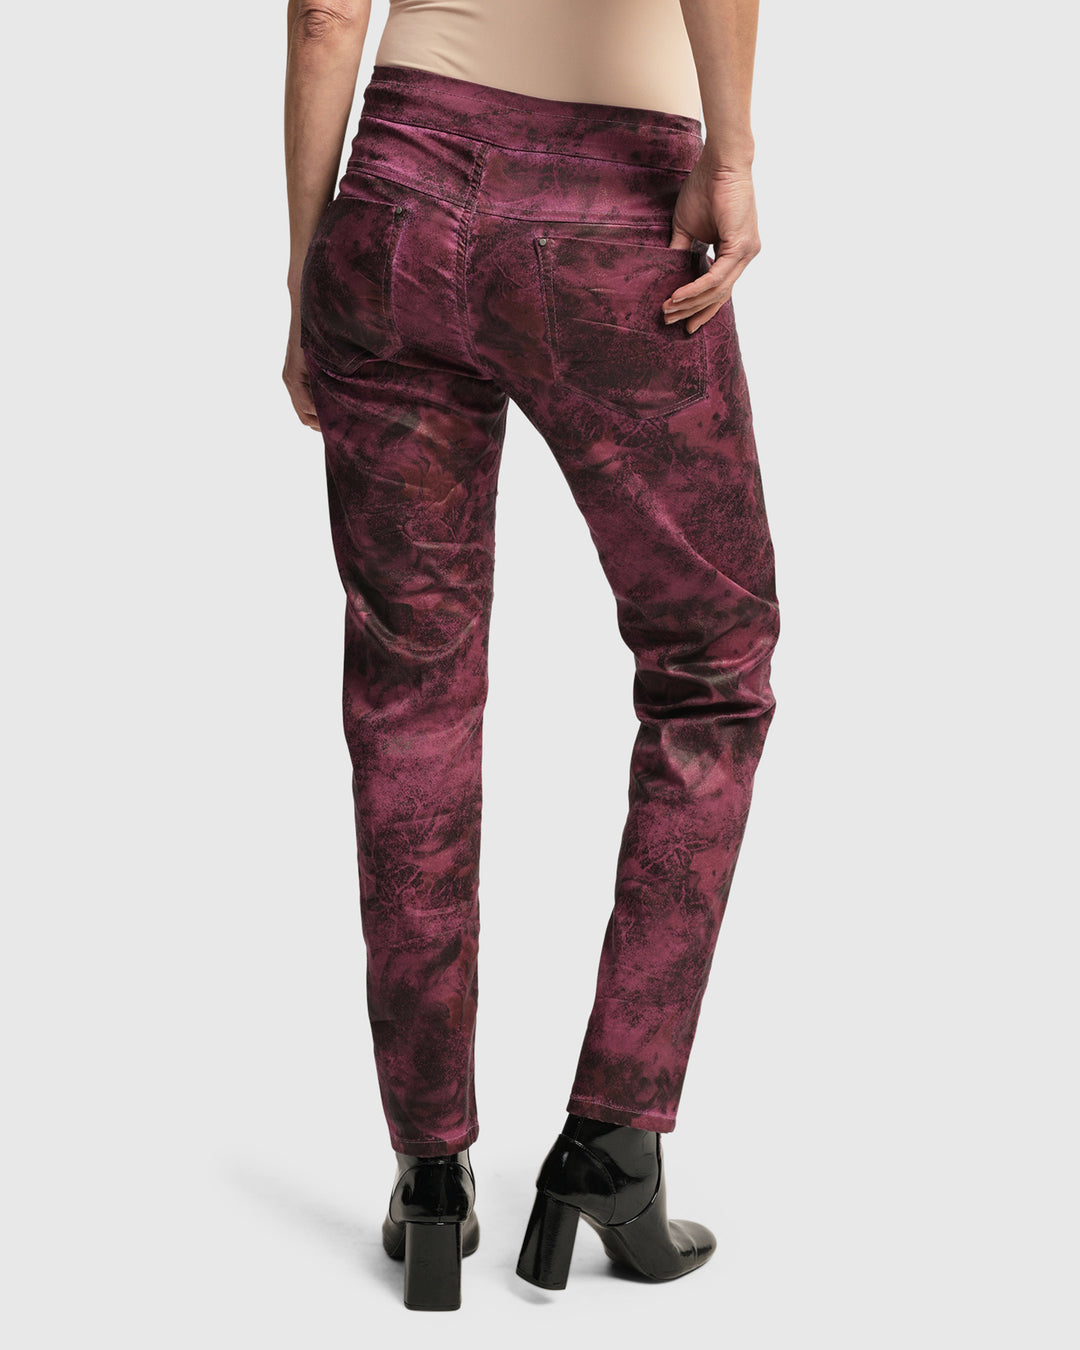 Urban Iconic Jeans Desires, Purple